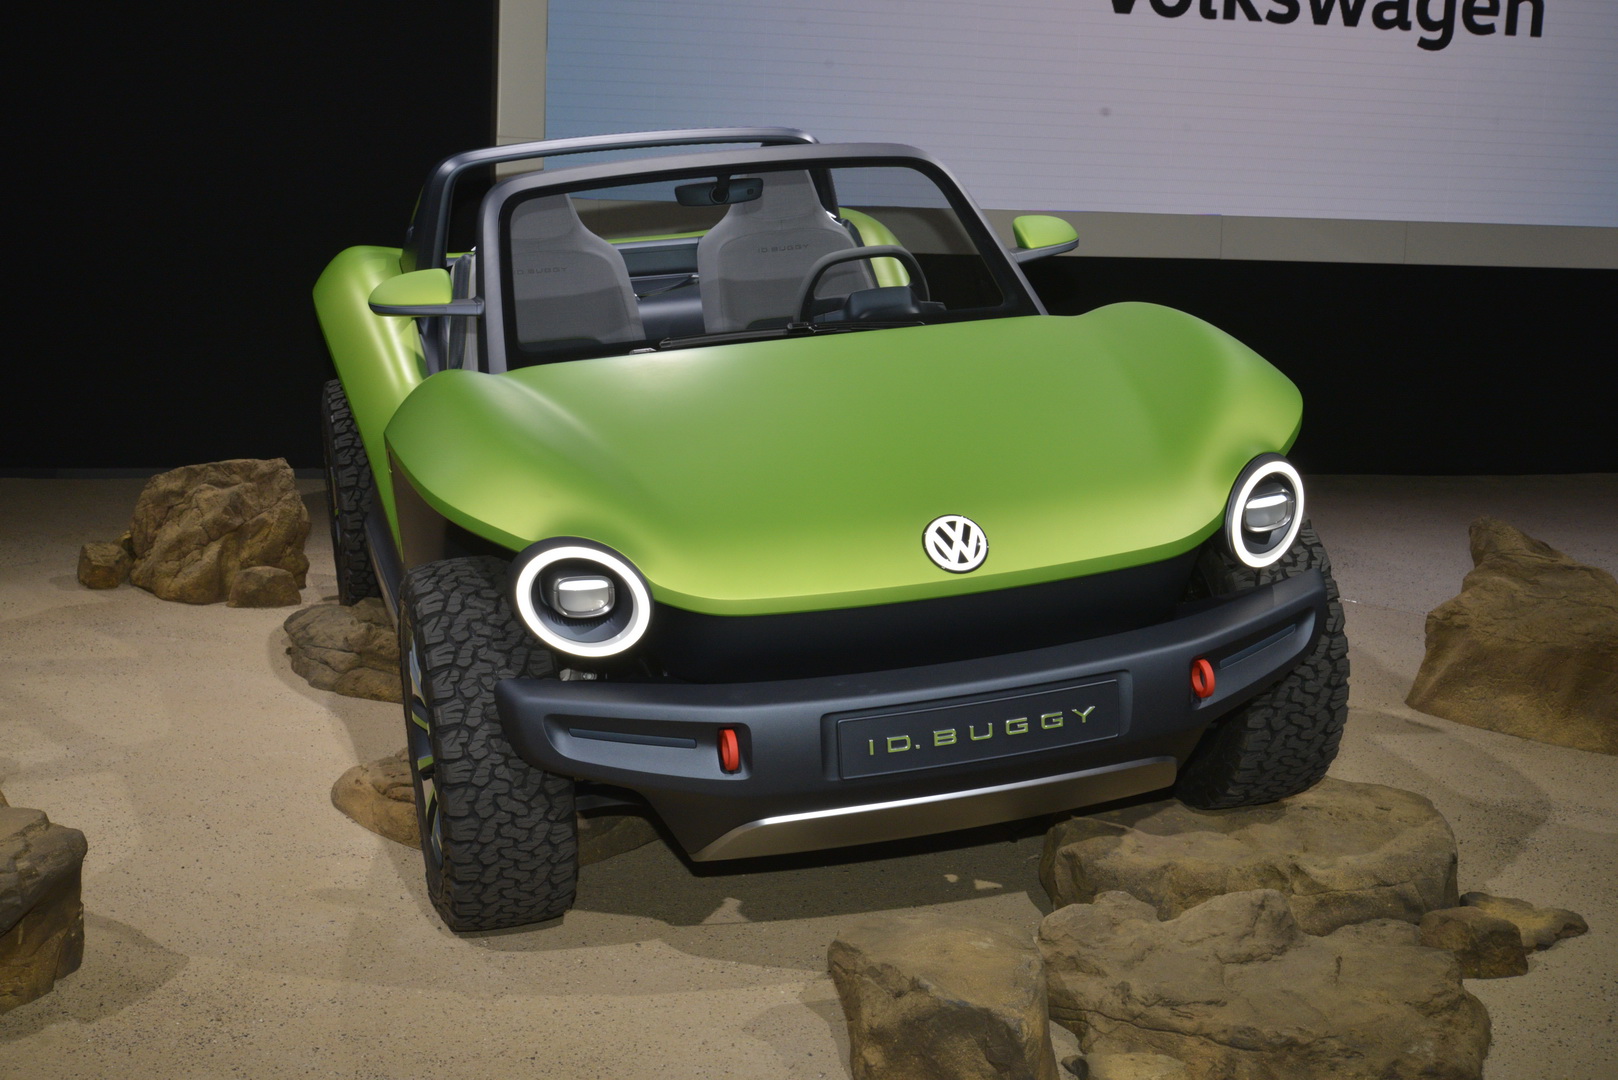 VW ID Buggy resim galerisi (19.04.2019)